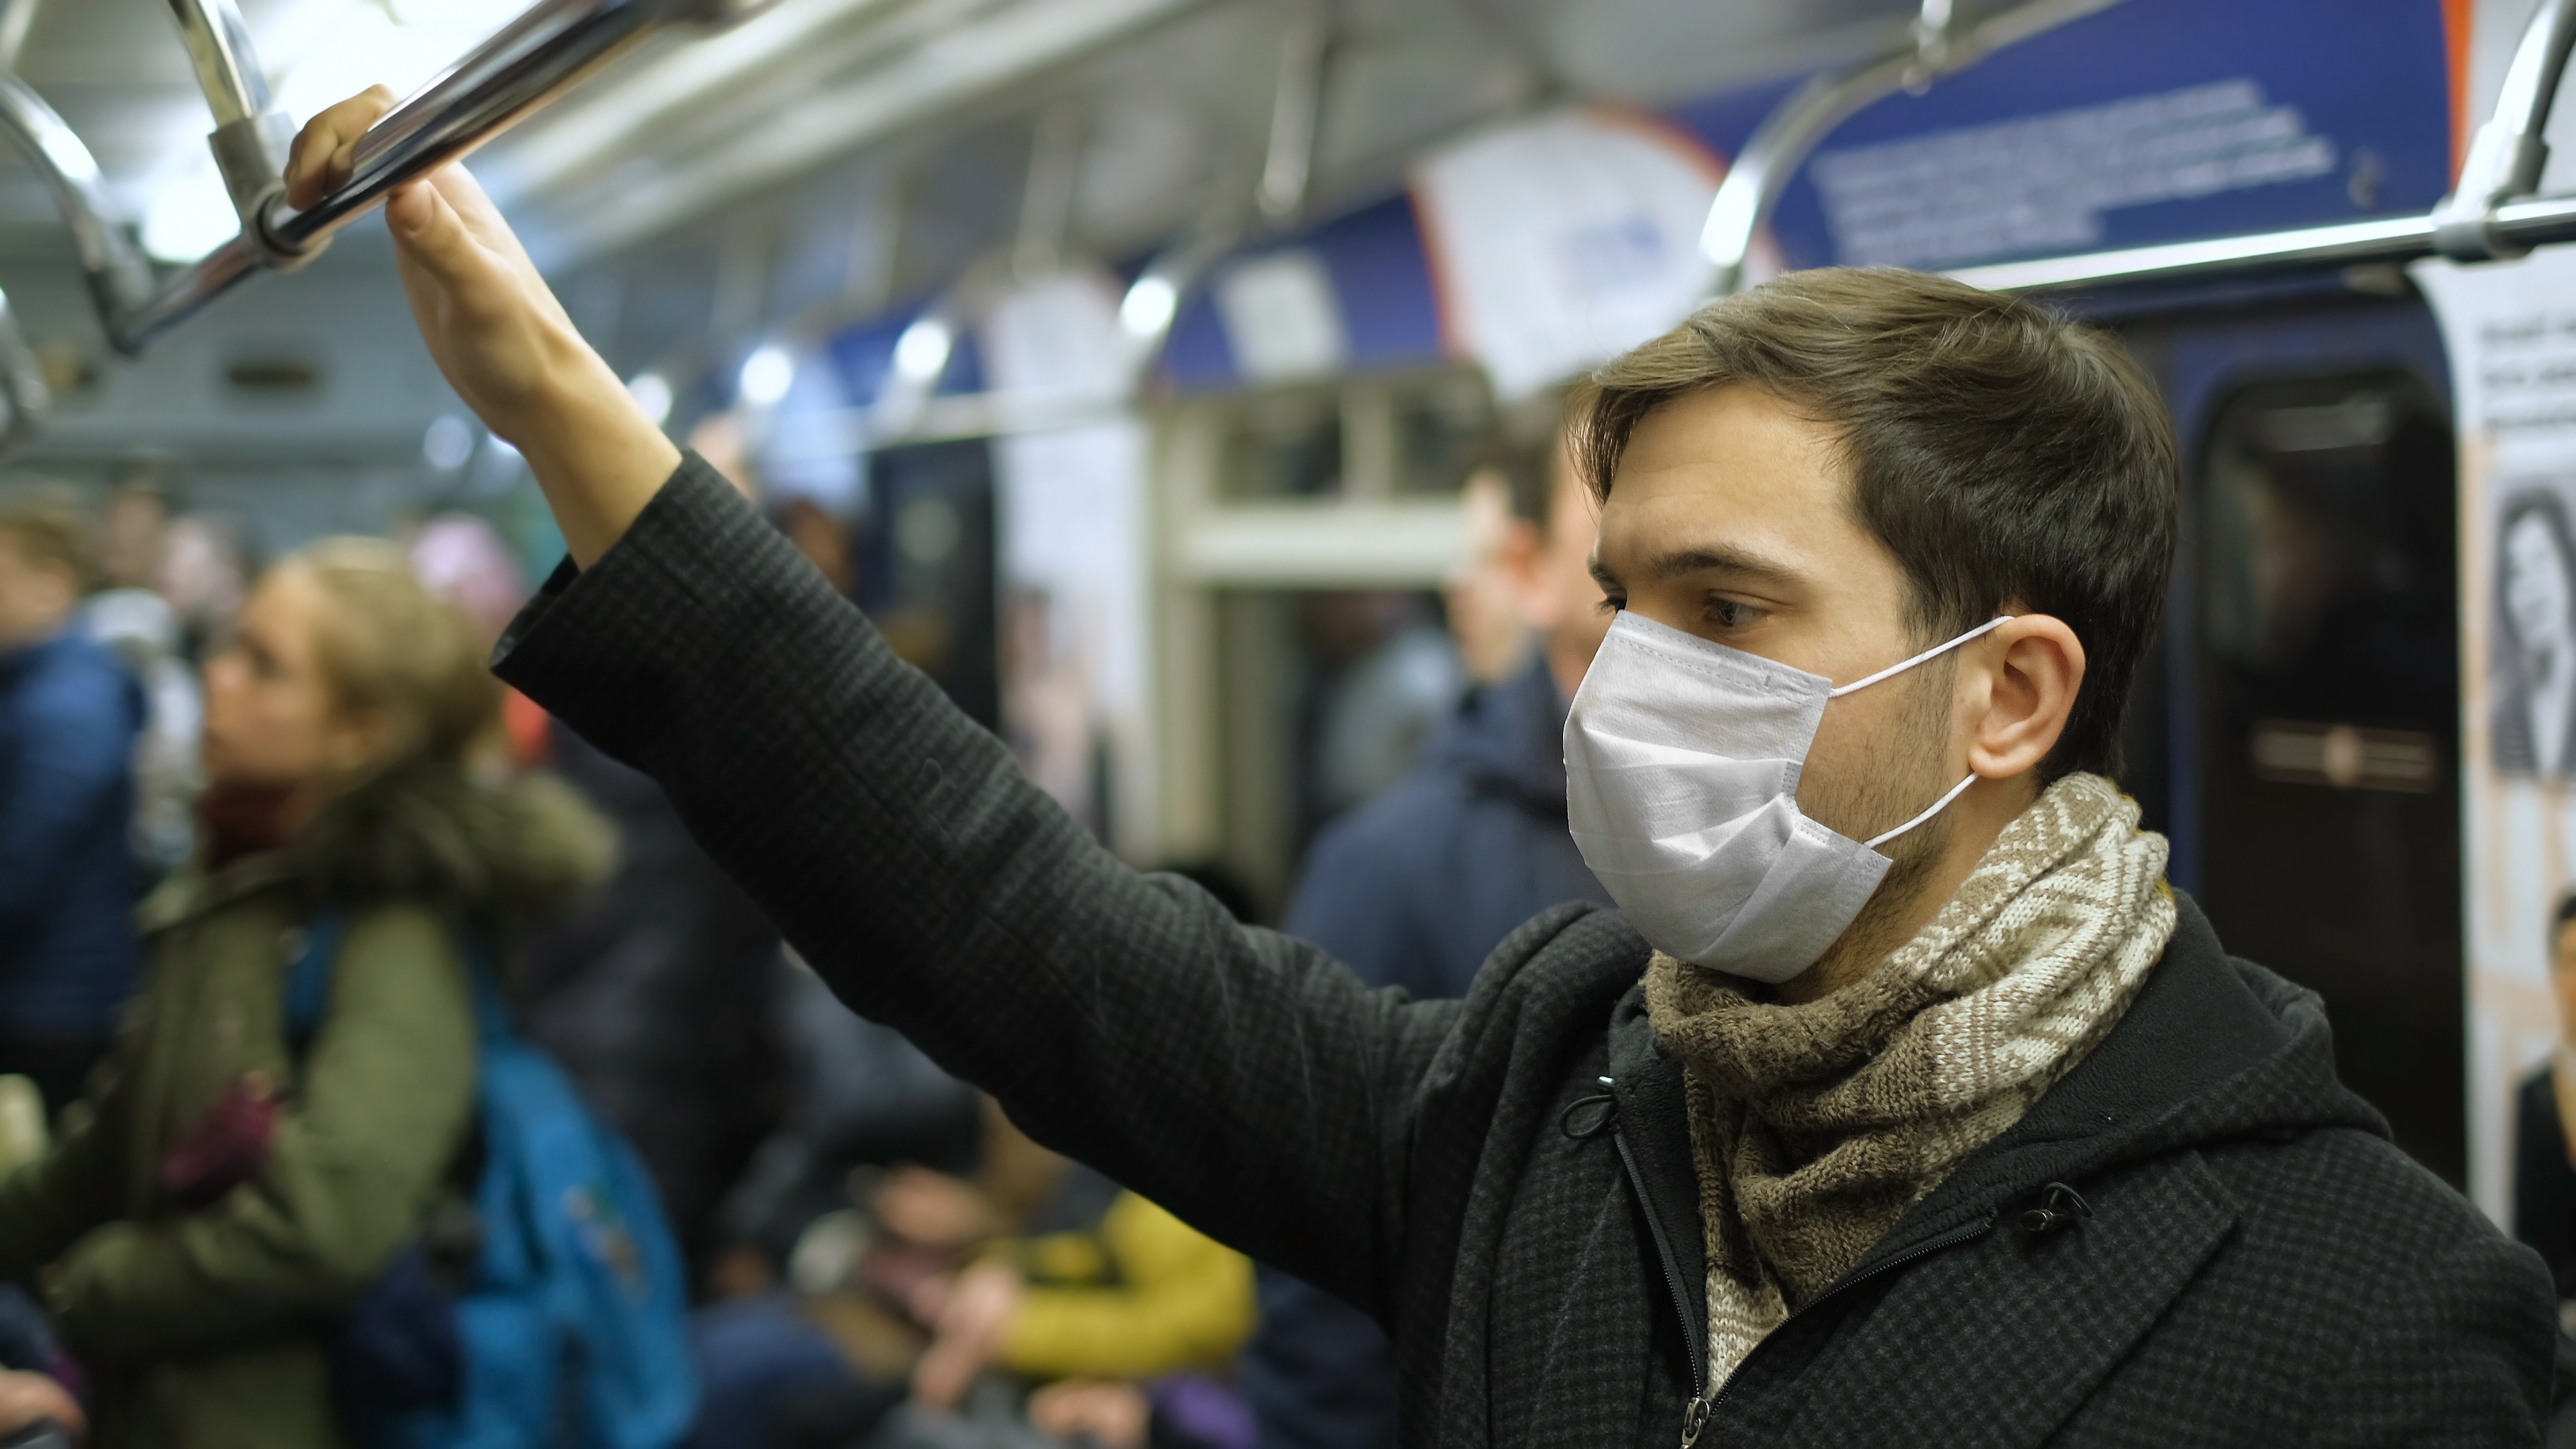 Man on subway, wearing a mask